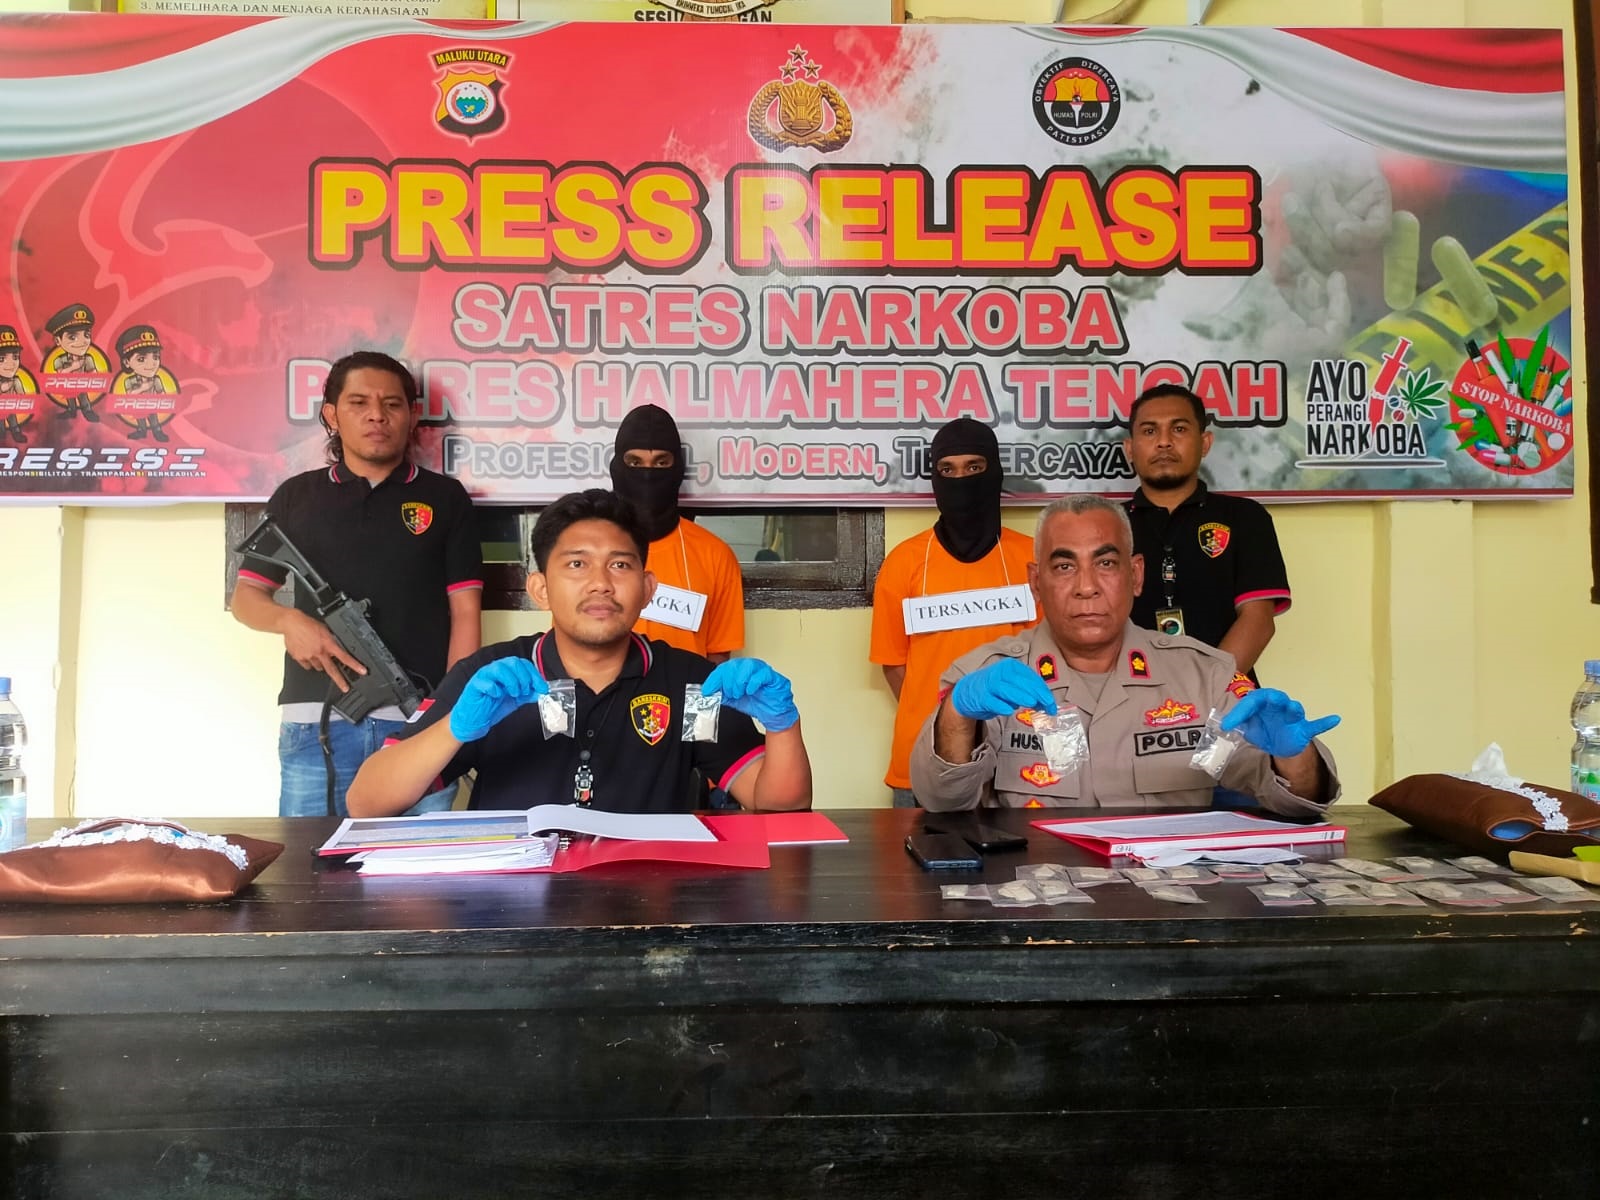 Press Release pengungkapan kasus narkoba